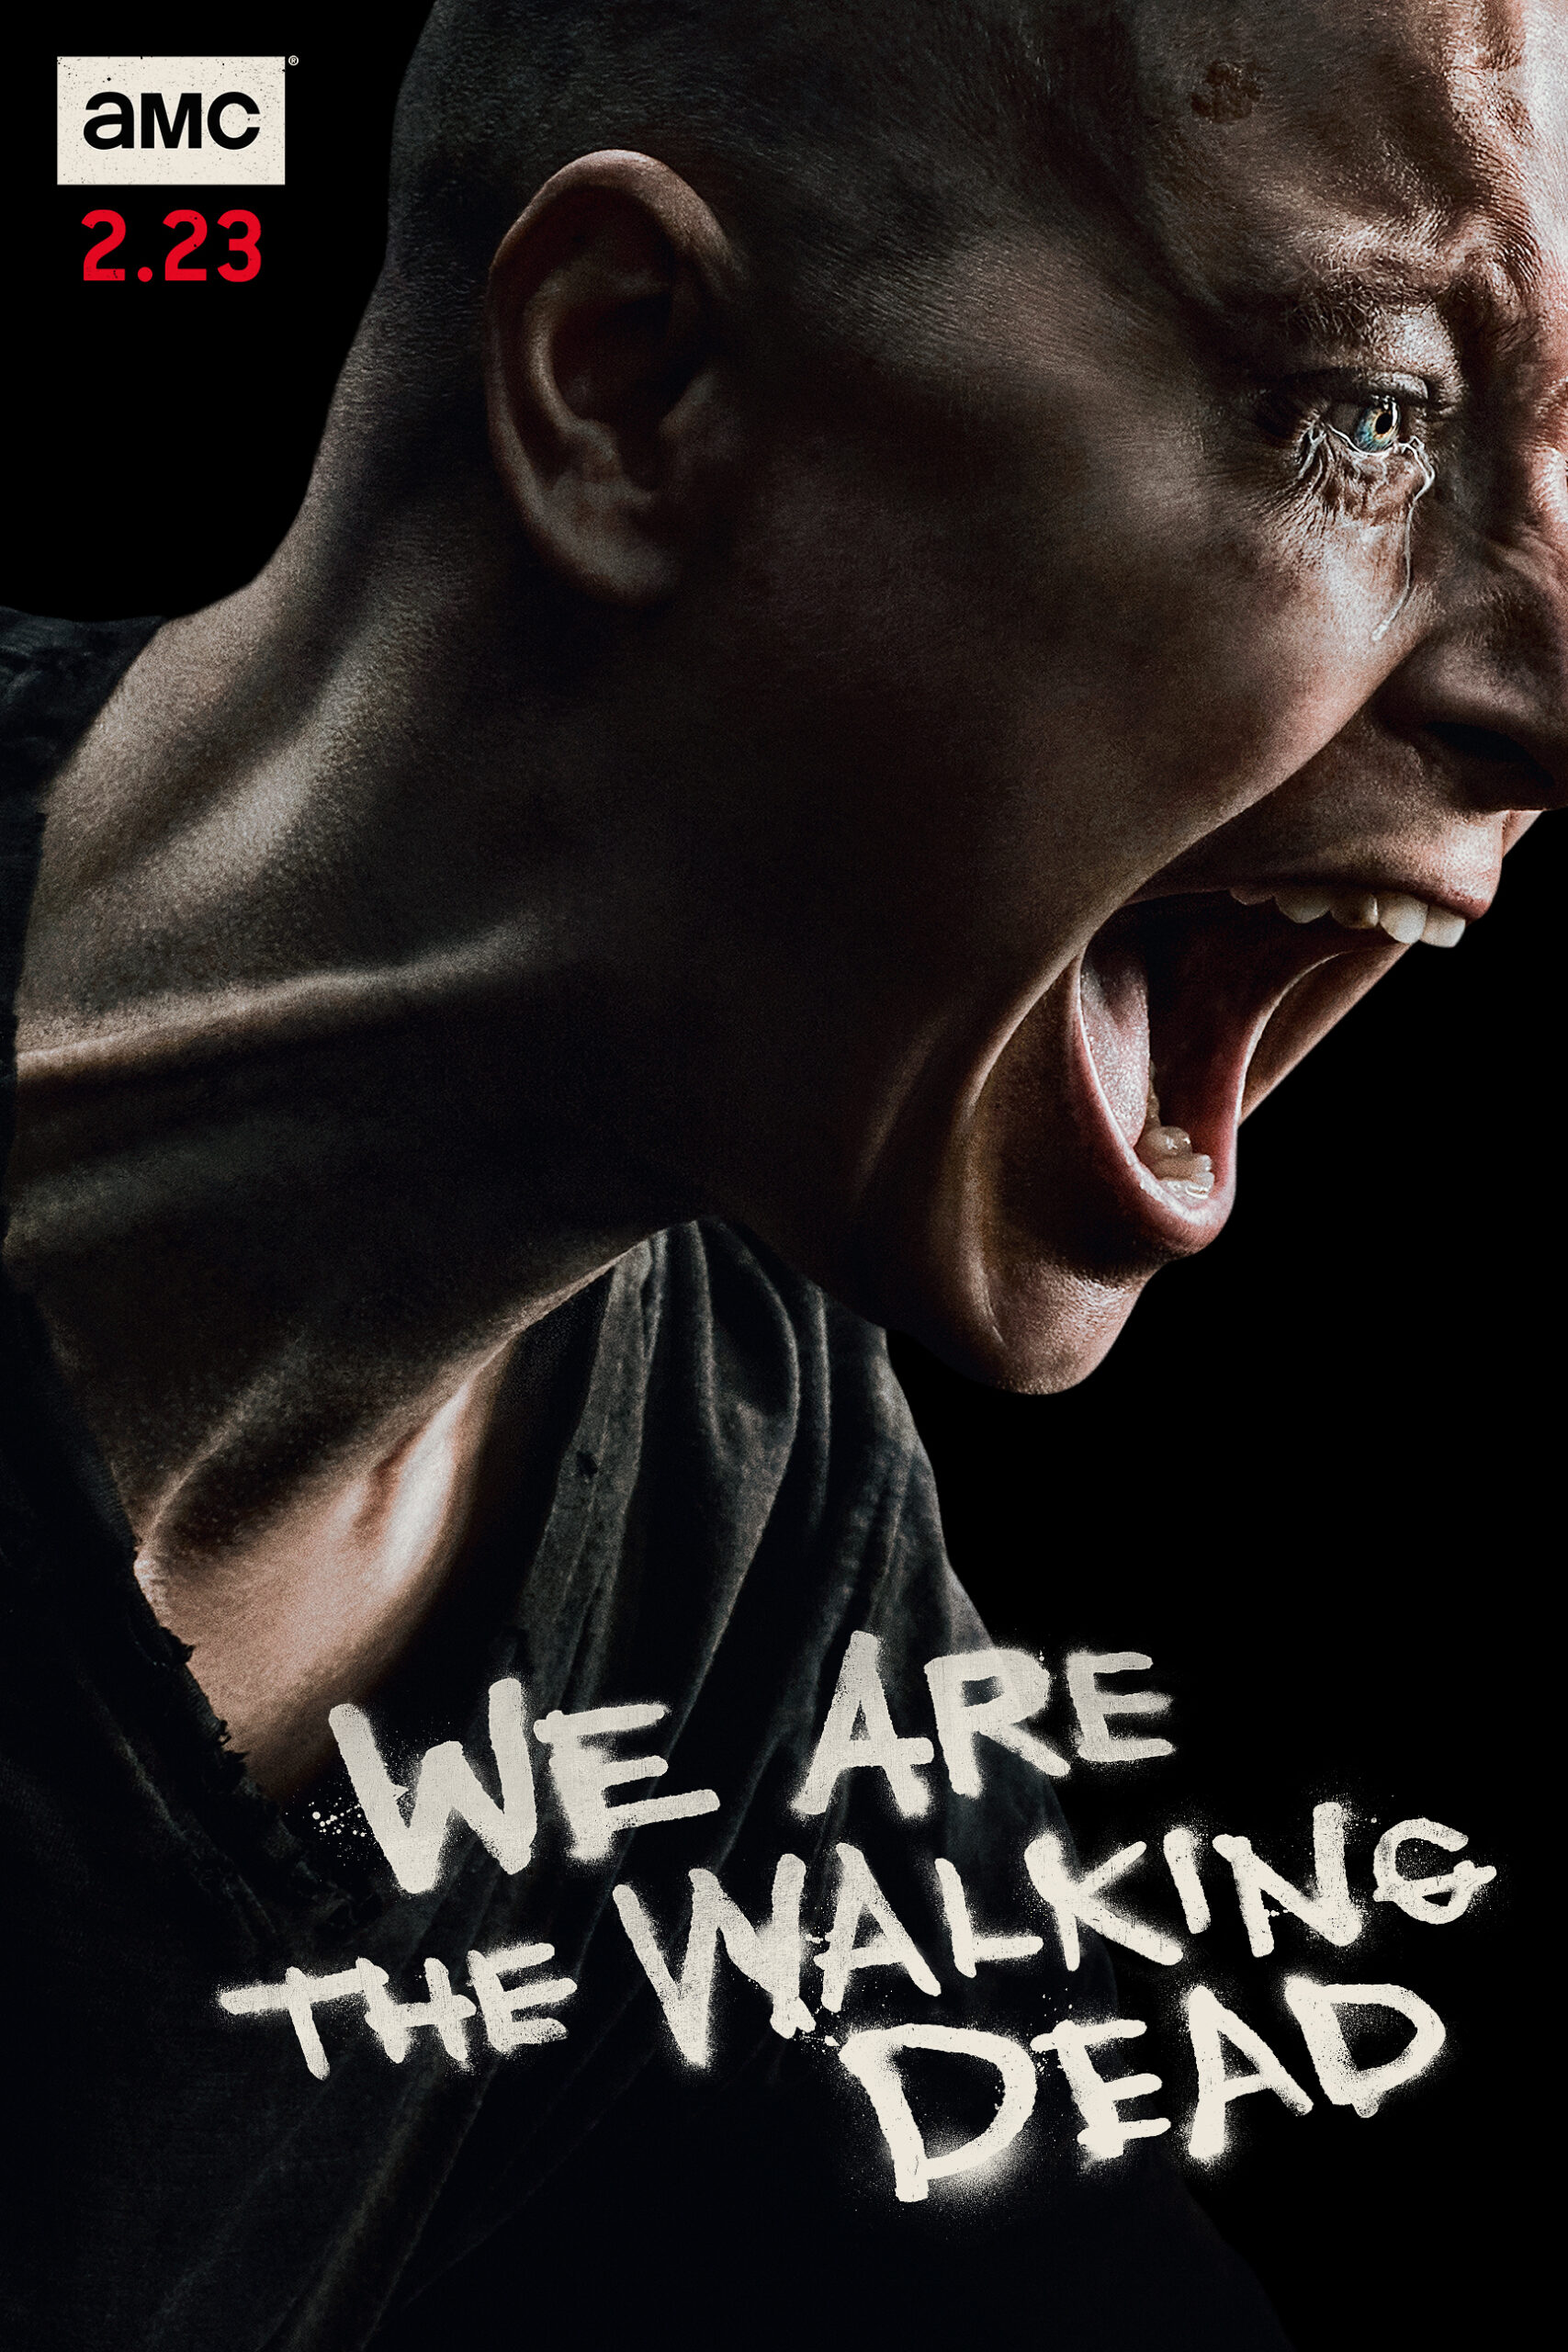 ดูหนังออนไลน์ฟรี The Walking Dead Season 4 EP12 เดอะวอล์กกิงเดด ปี4 ตอนที่12 [[Sub Thai]]